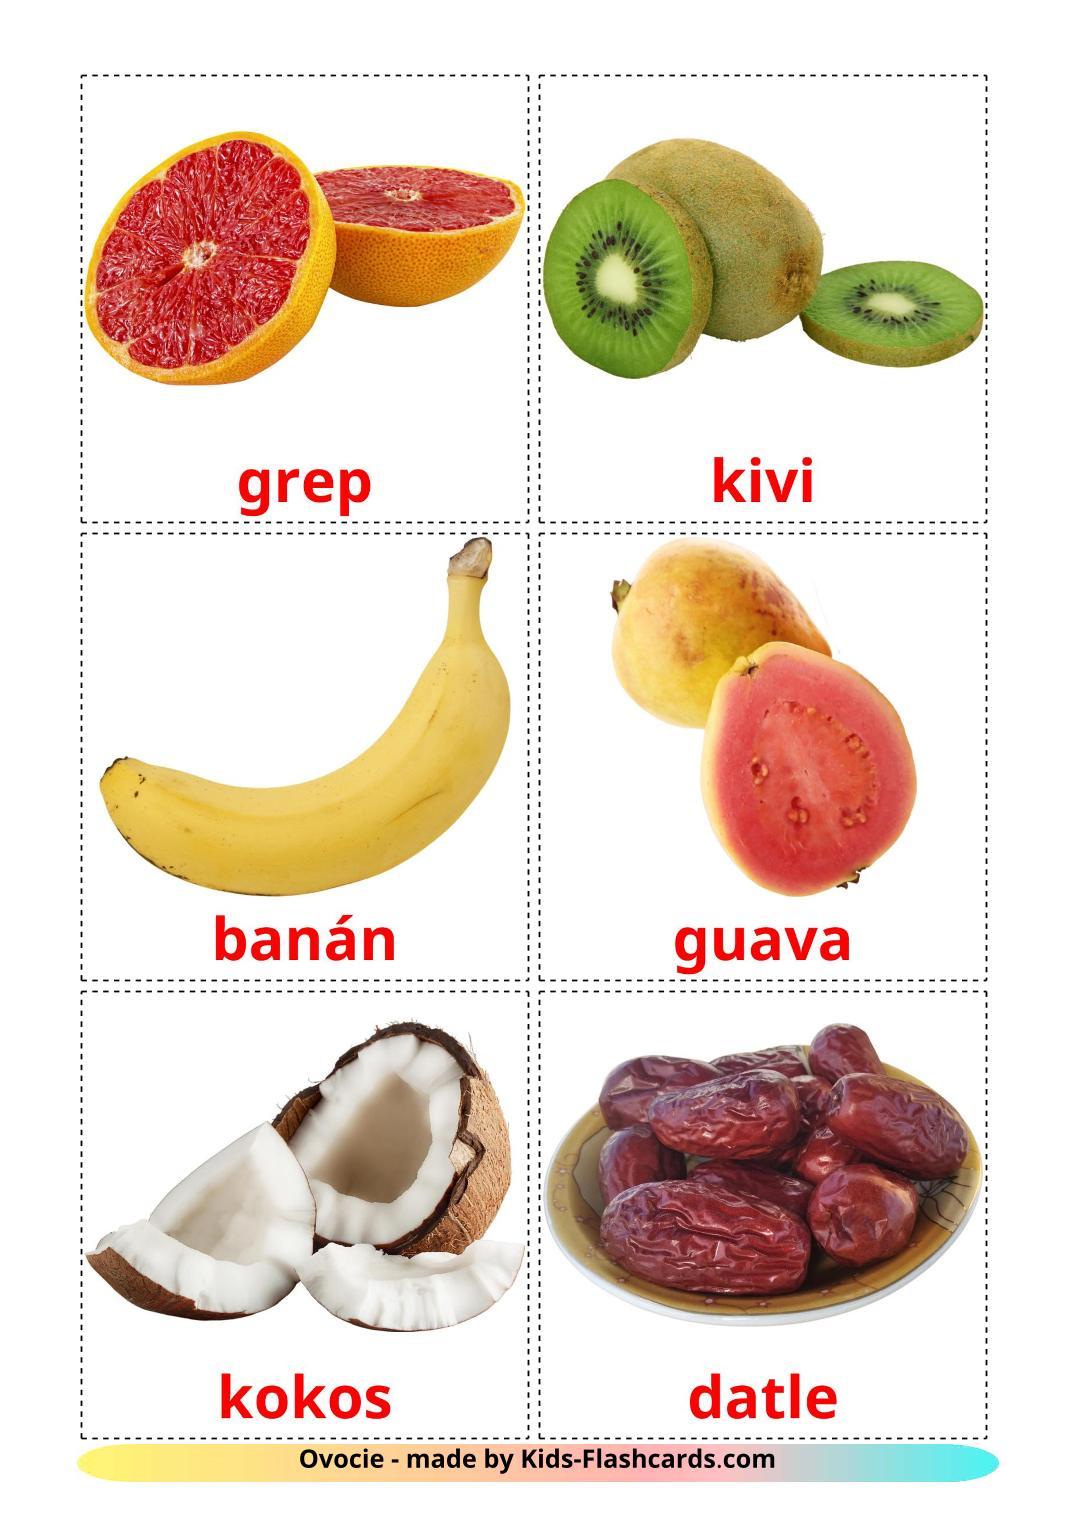 Les Fruits - 20 Flashcards slovaque imprimables gratuitement